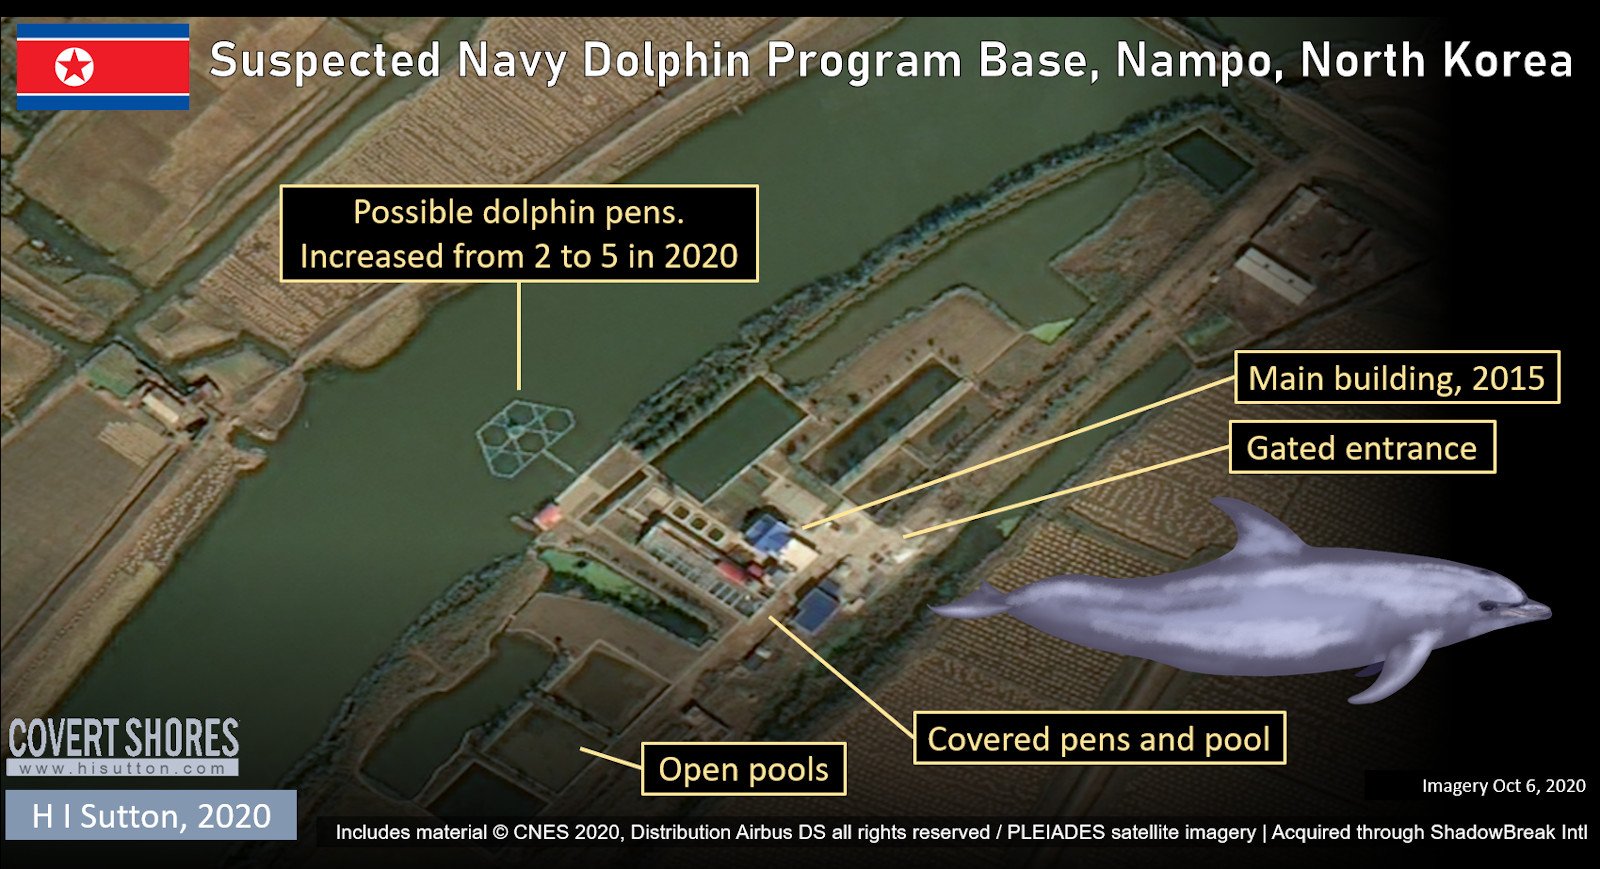 بر اساس اسناد تازه و تصاویر ماهواره ای، کره شمالی در حال آموزش دلفین ها برای اهداف نظامی مانند مین روبی و حمله به غواصان دشمن است.